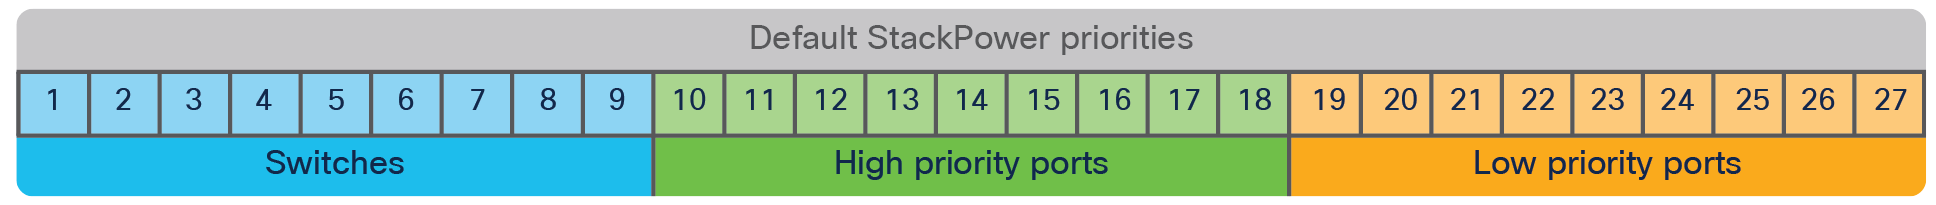 Default Cisco StackPower priorities